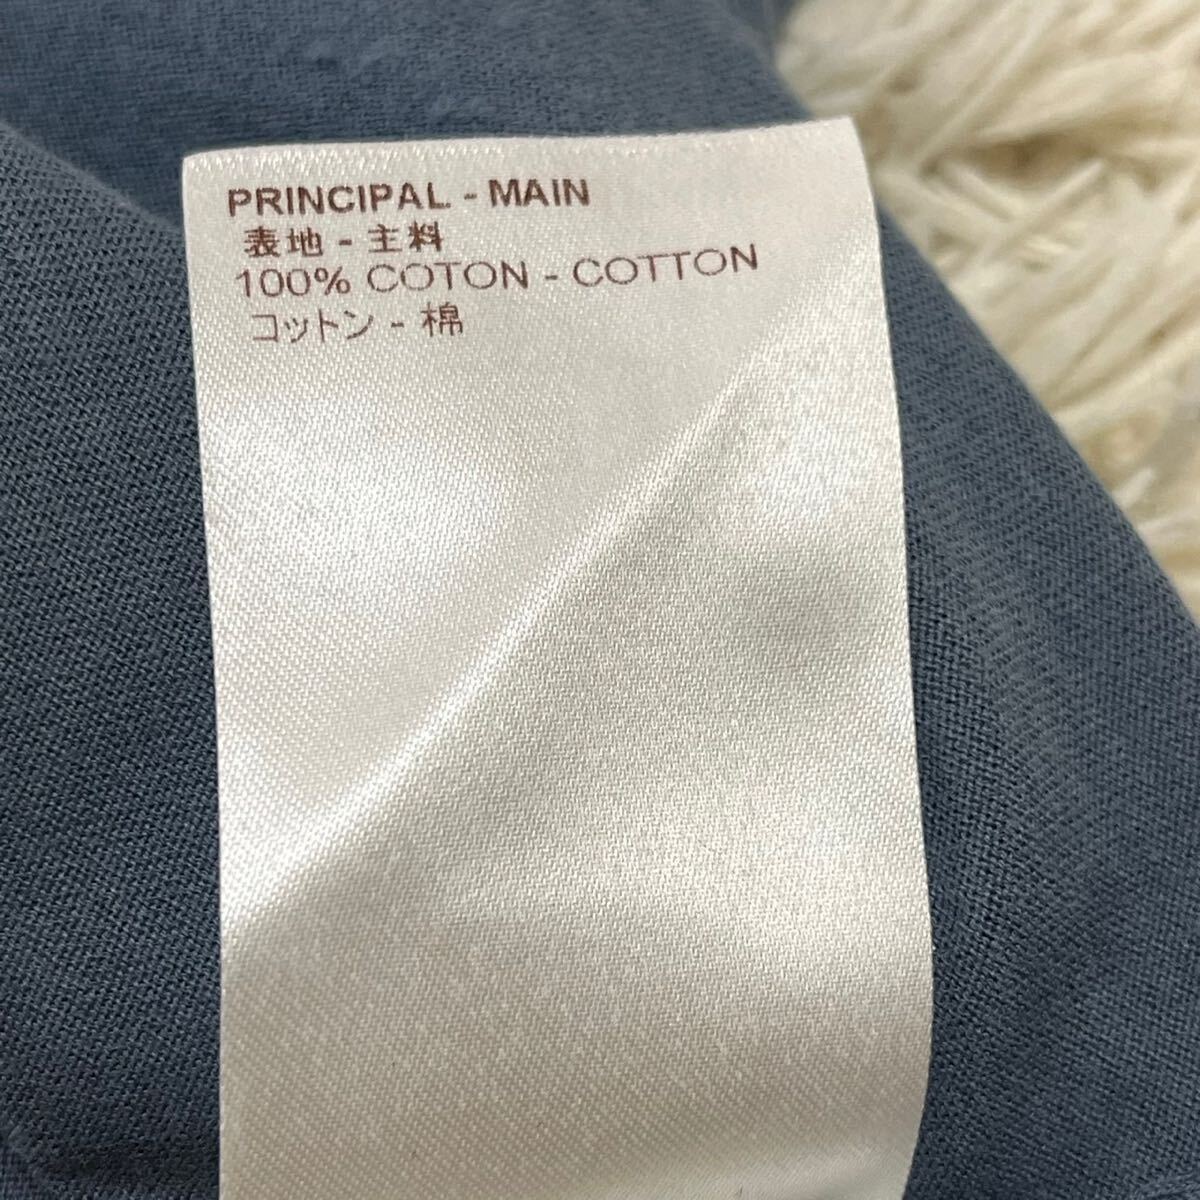 ルイヴィトン『圧倒的高級感』LOUIS VUITTON ロゴ LV プリント Tシャツ 半袖 カットソー Lサイズ 紺 ネイビー メンズの画像6